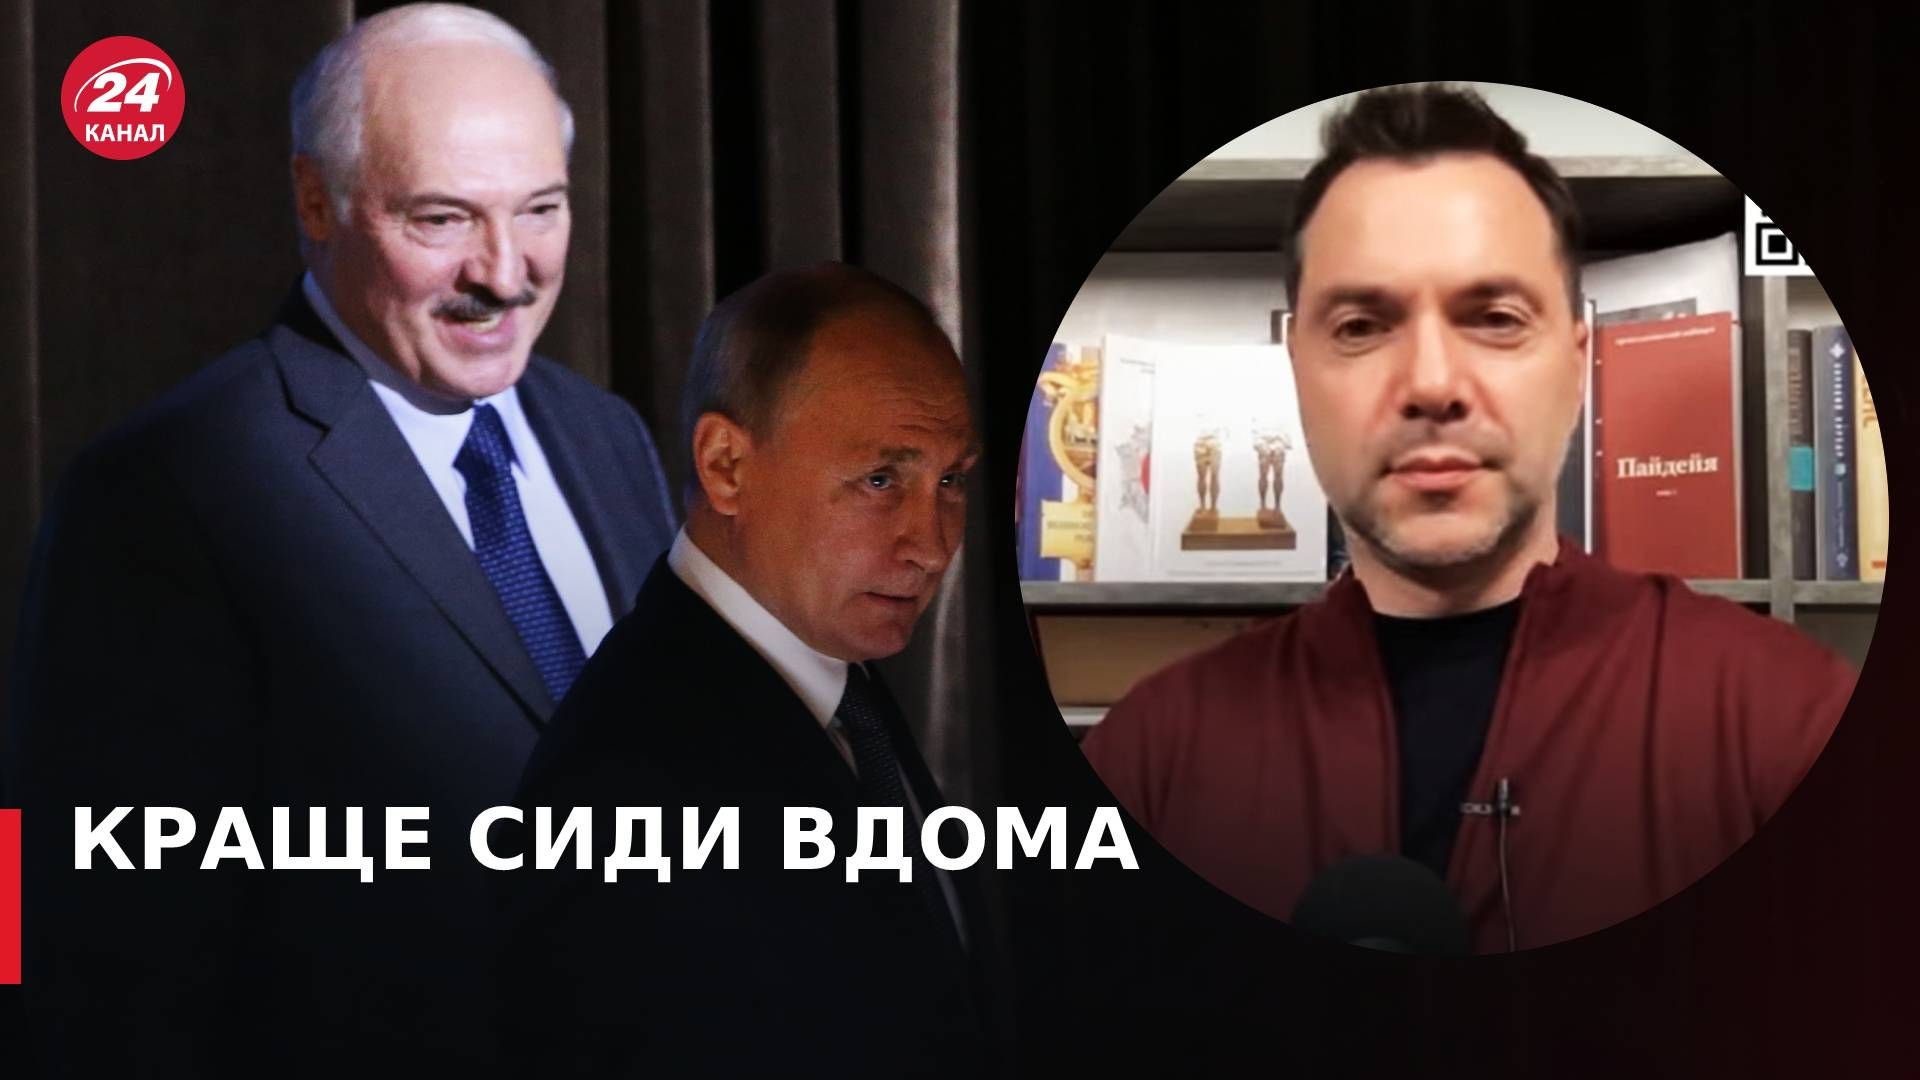 Встреча Путина и Лукашенко в Москве - Арестович про возможное покушение